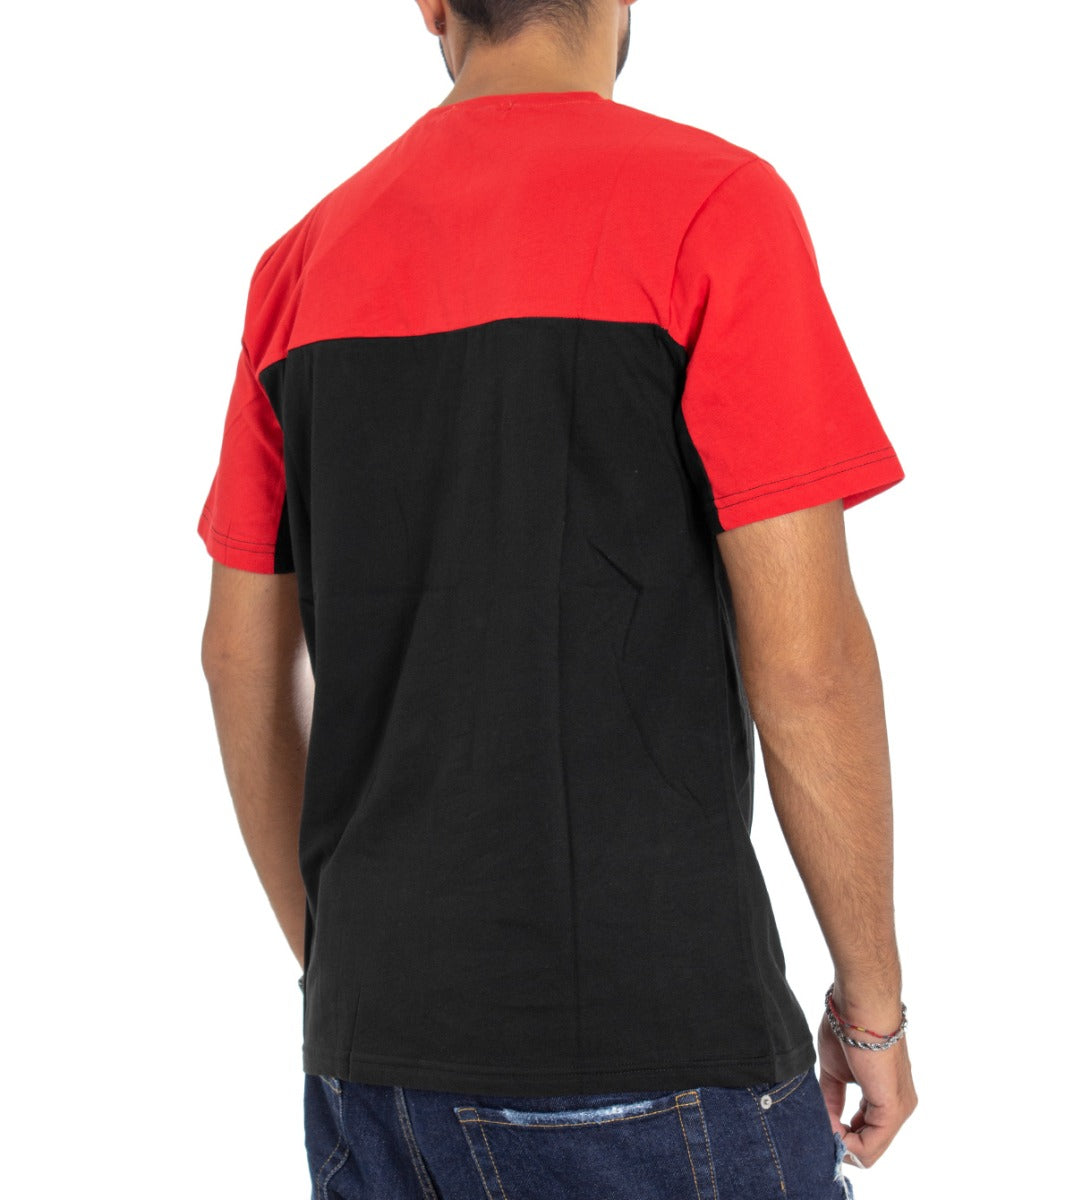 T-Shirt Uomo MOD Girocollo Righe Bicolore Rossa Nera Stampa Casual GIOSAL